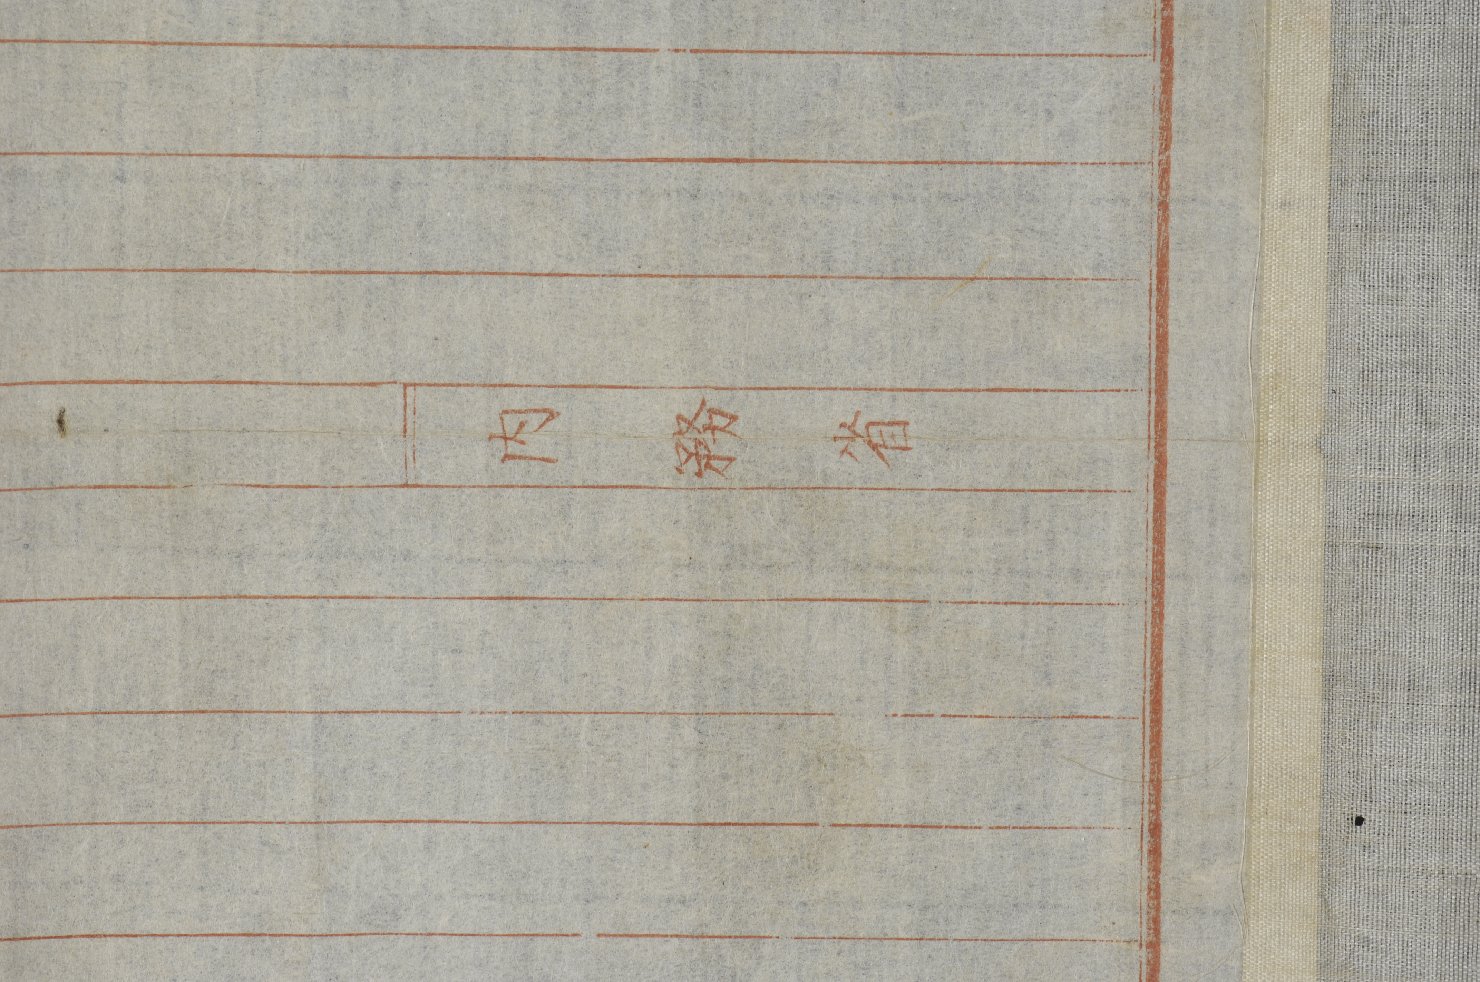 i Sedici Arhat, figura maschile di anziano (dipinto) - ambito cinese (inizio sec. XIX)